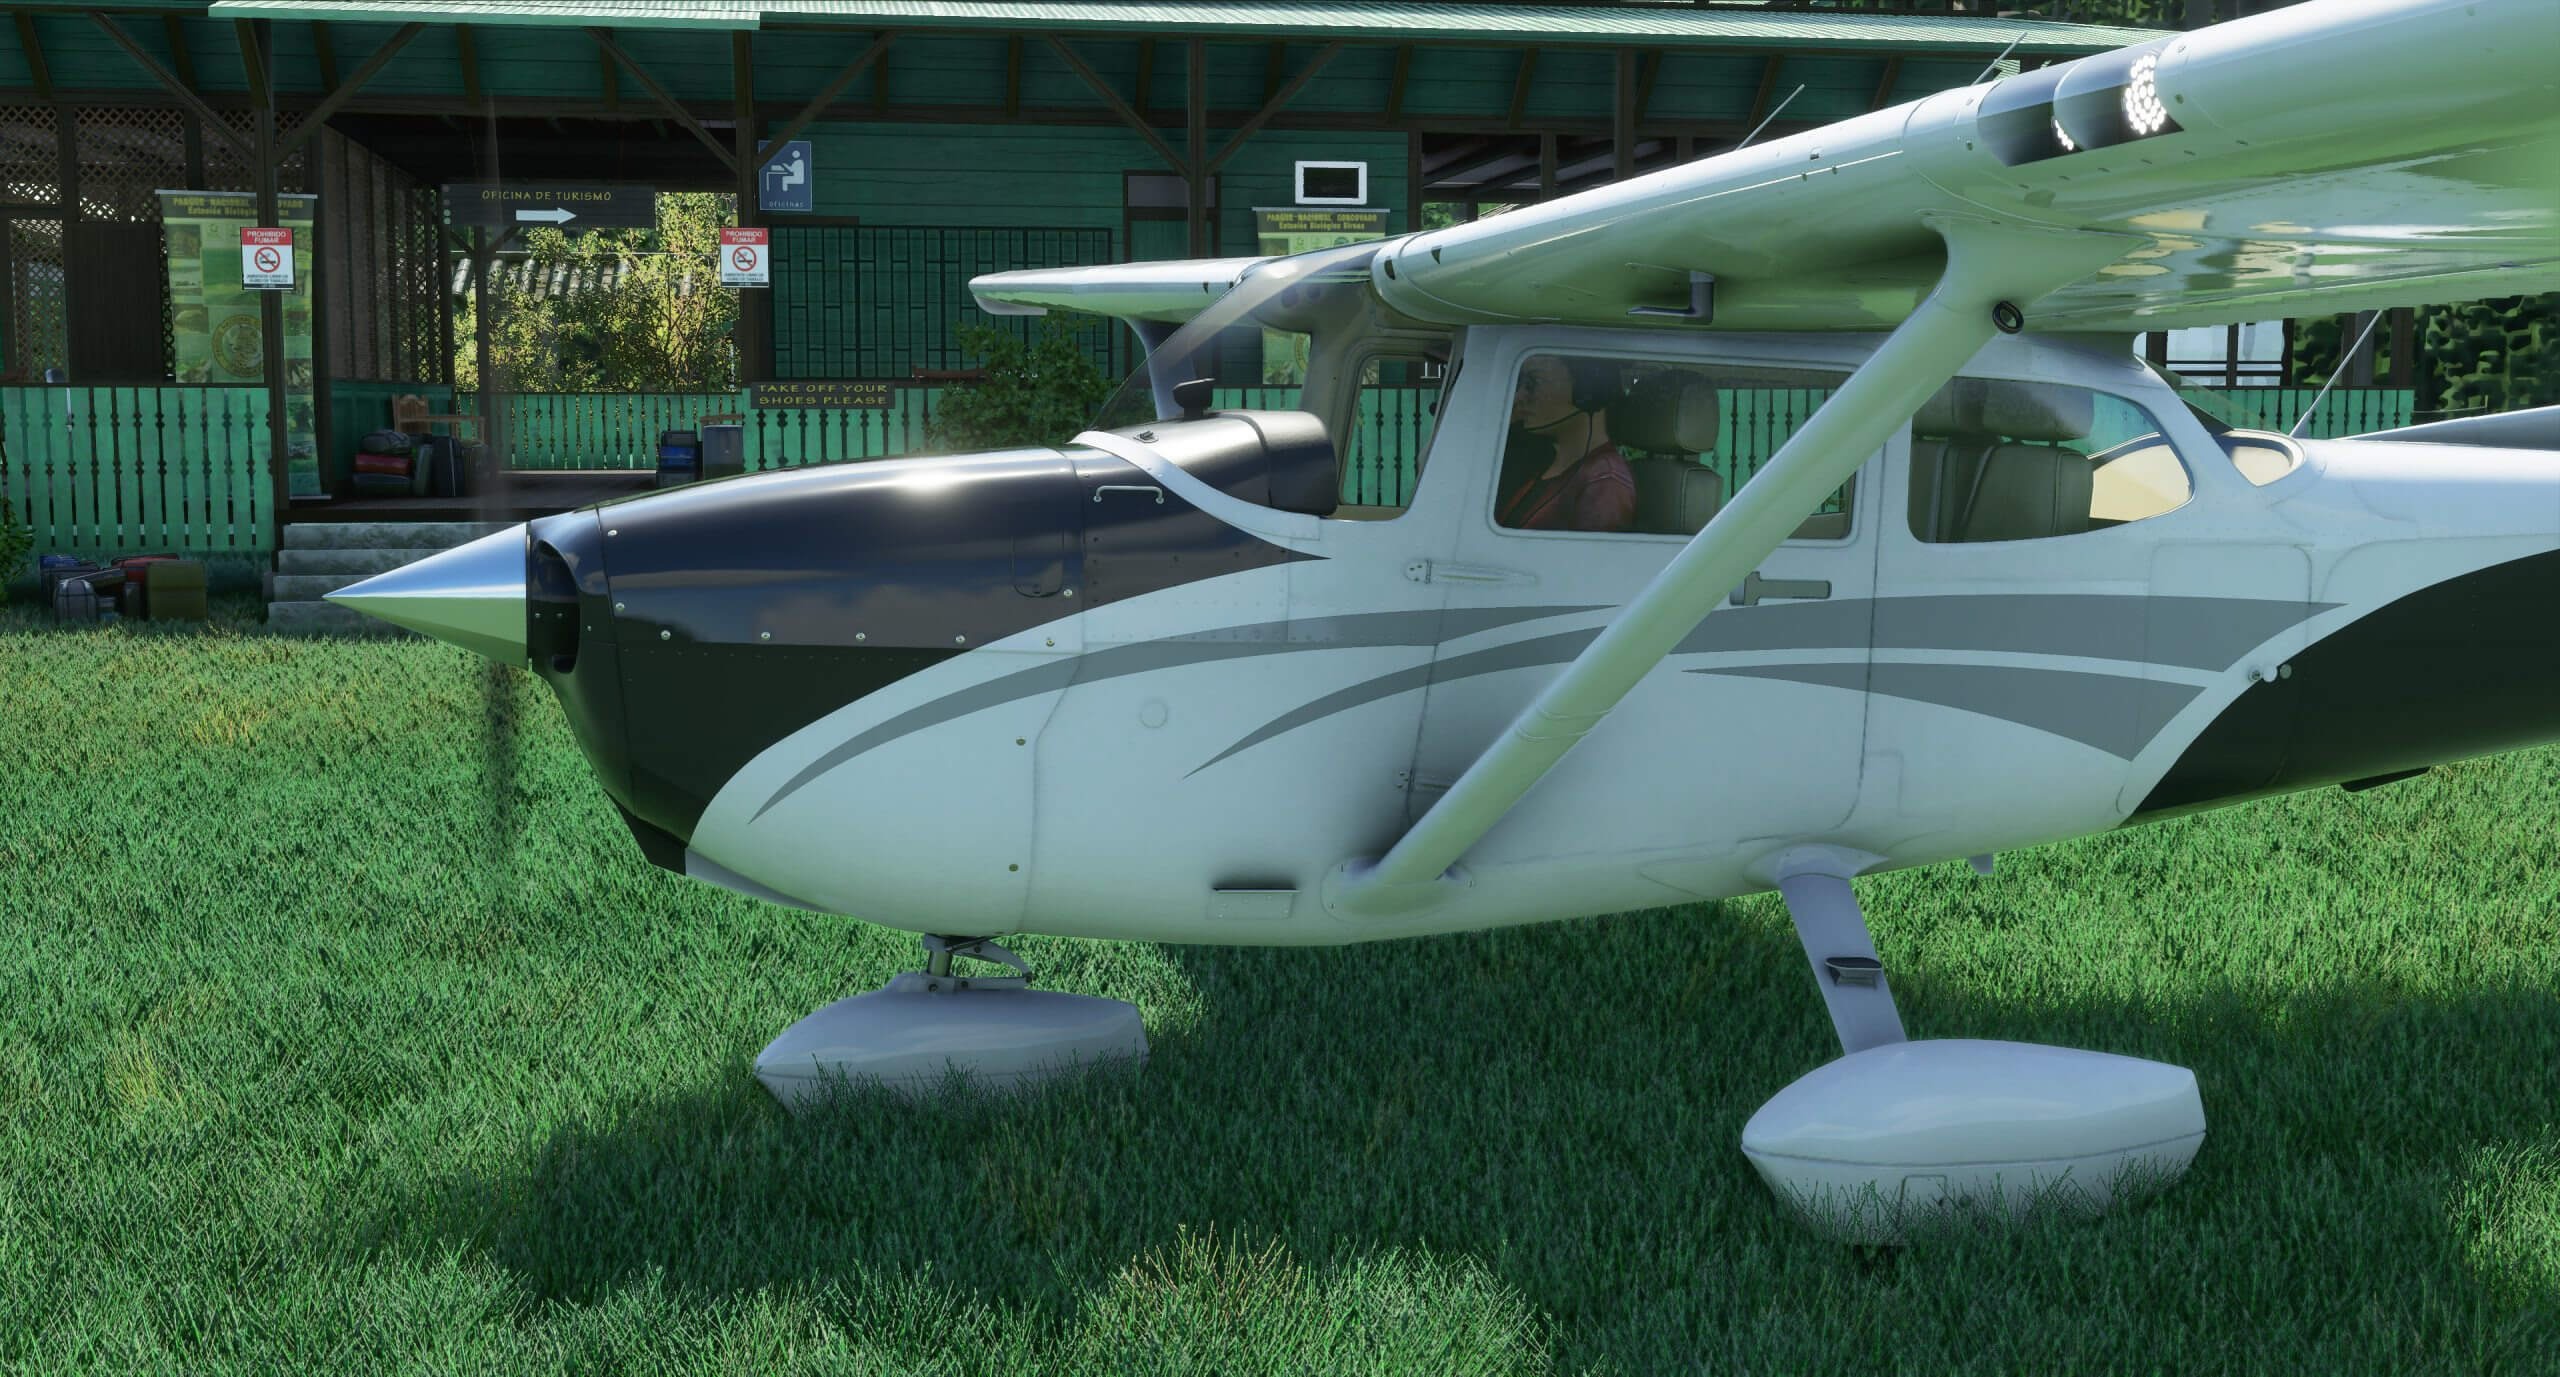 《微软飞行模拟》新截图展示高清模型与极致图形